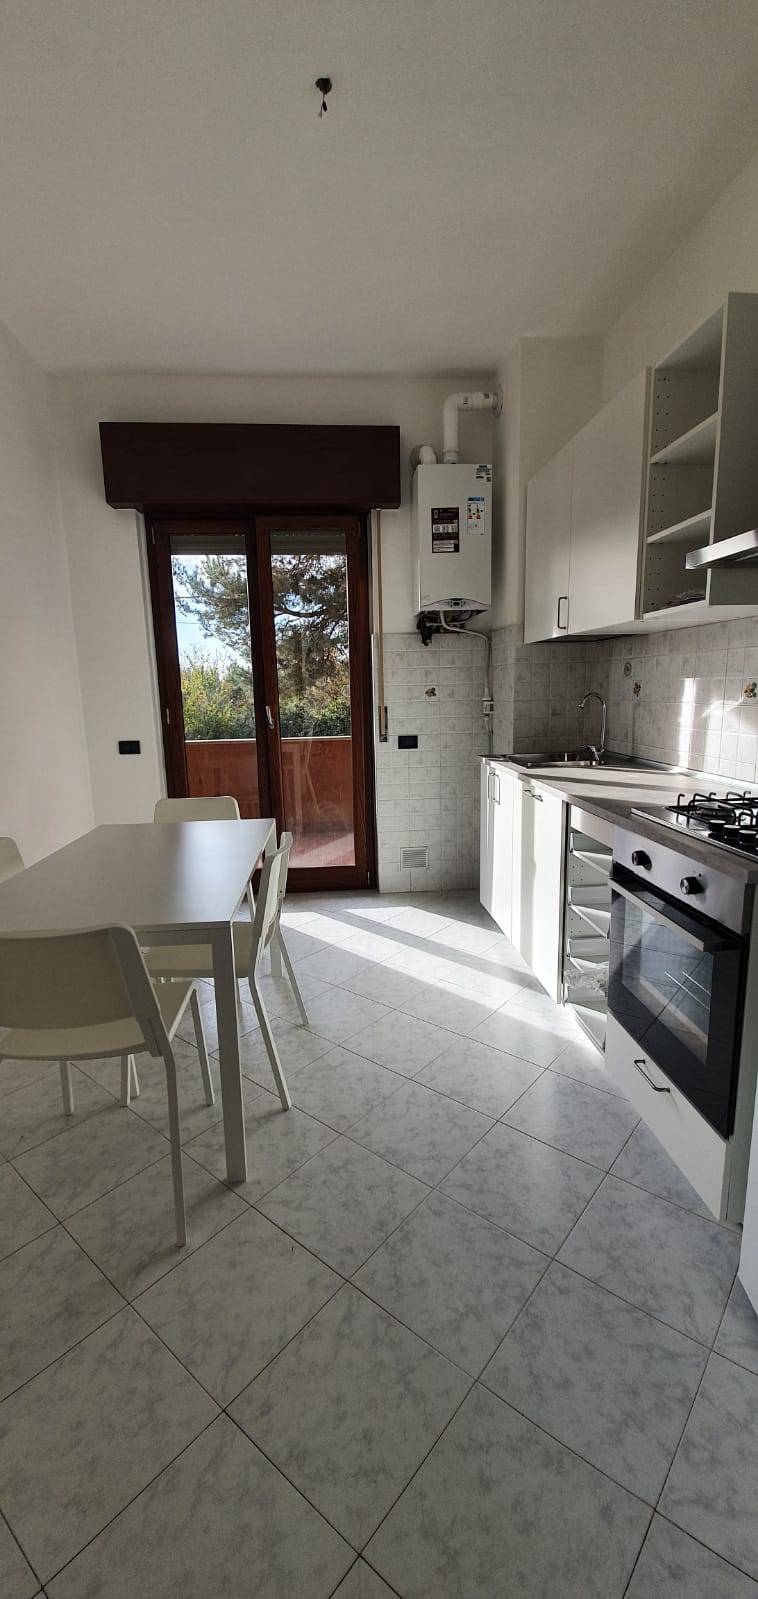 Appartamento in affitto a Bellinzago Novarese, 3 locali, prezzo € 600 | CambioCasa.it